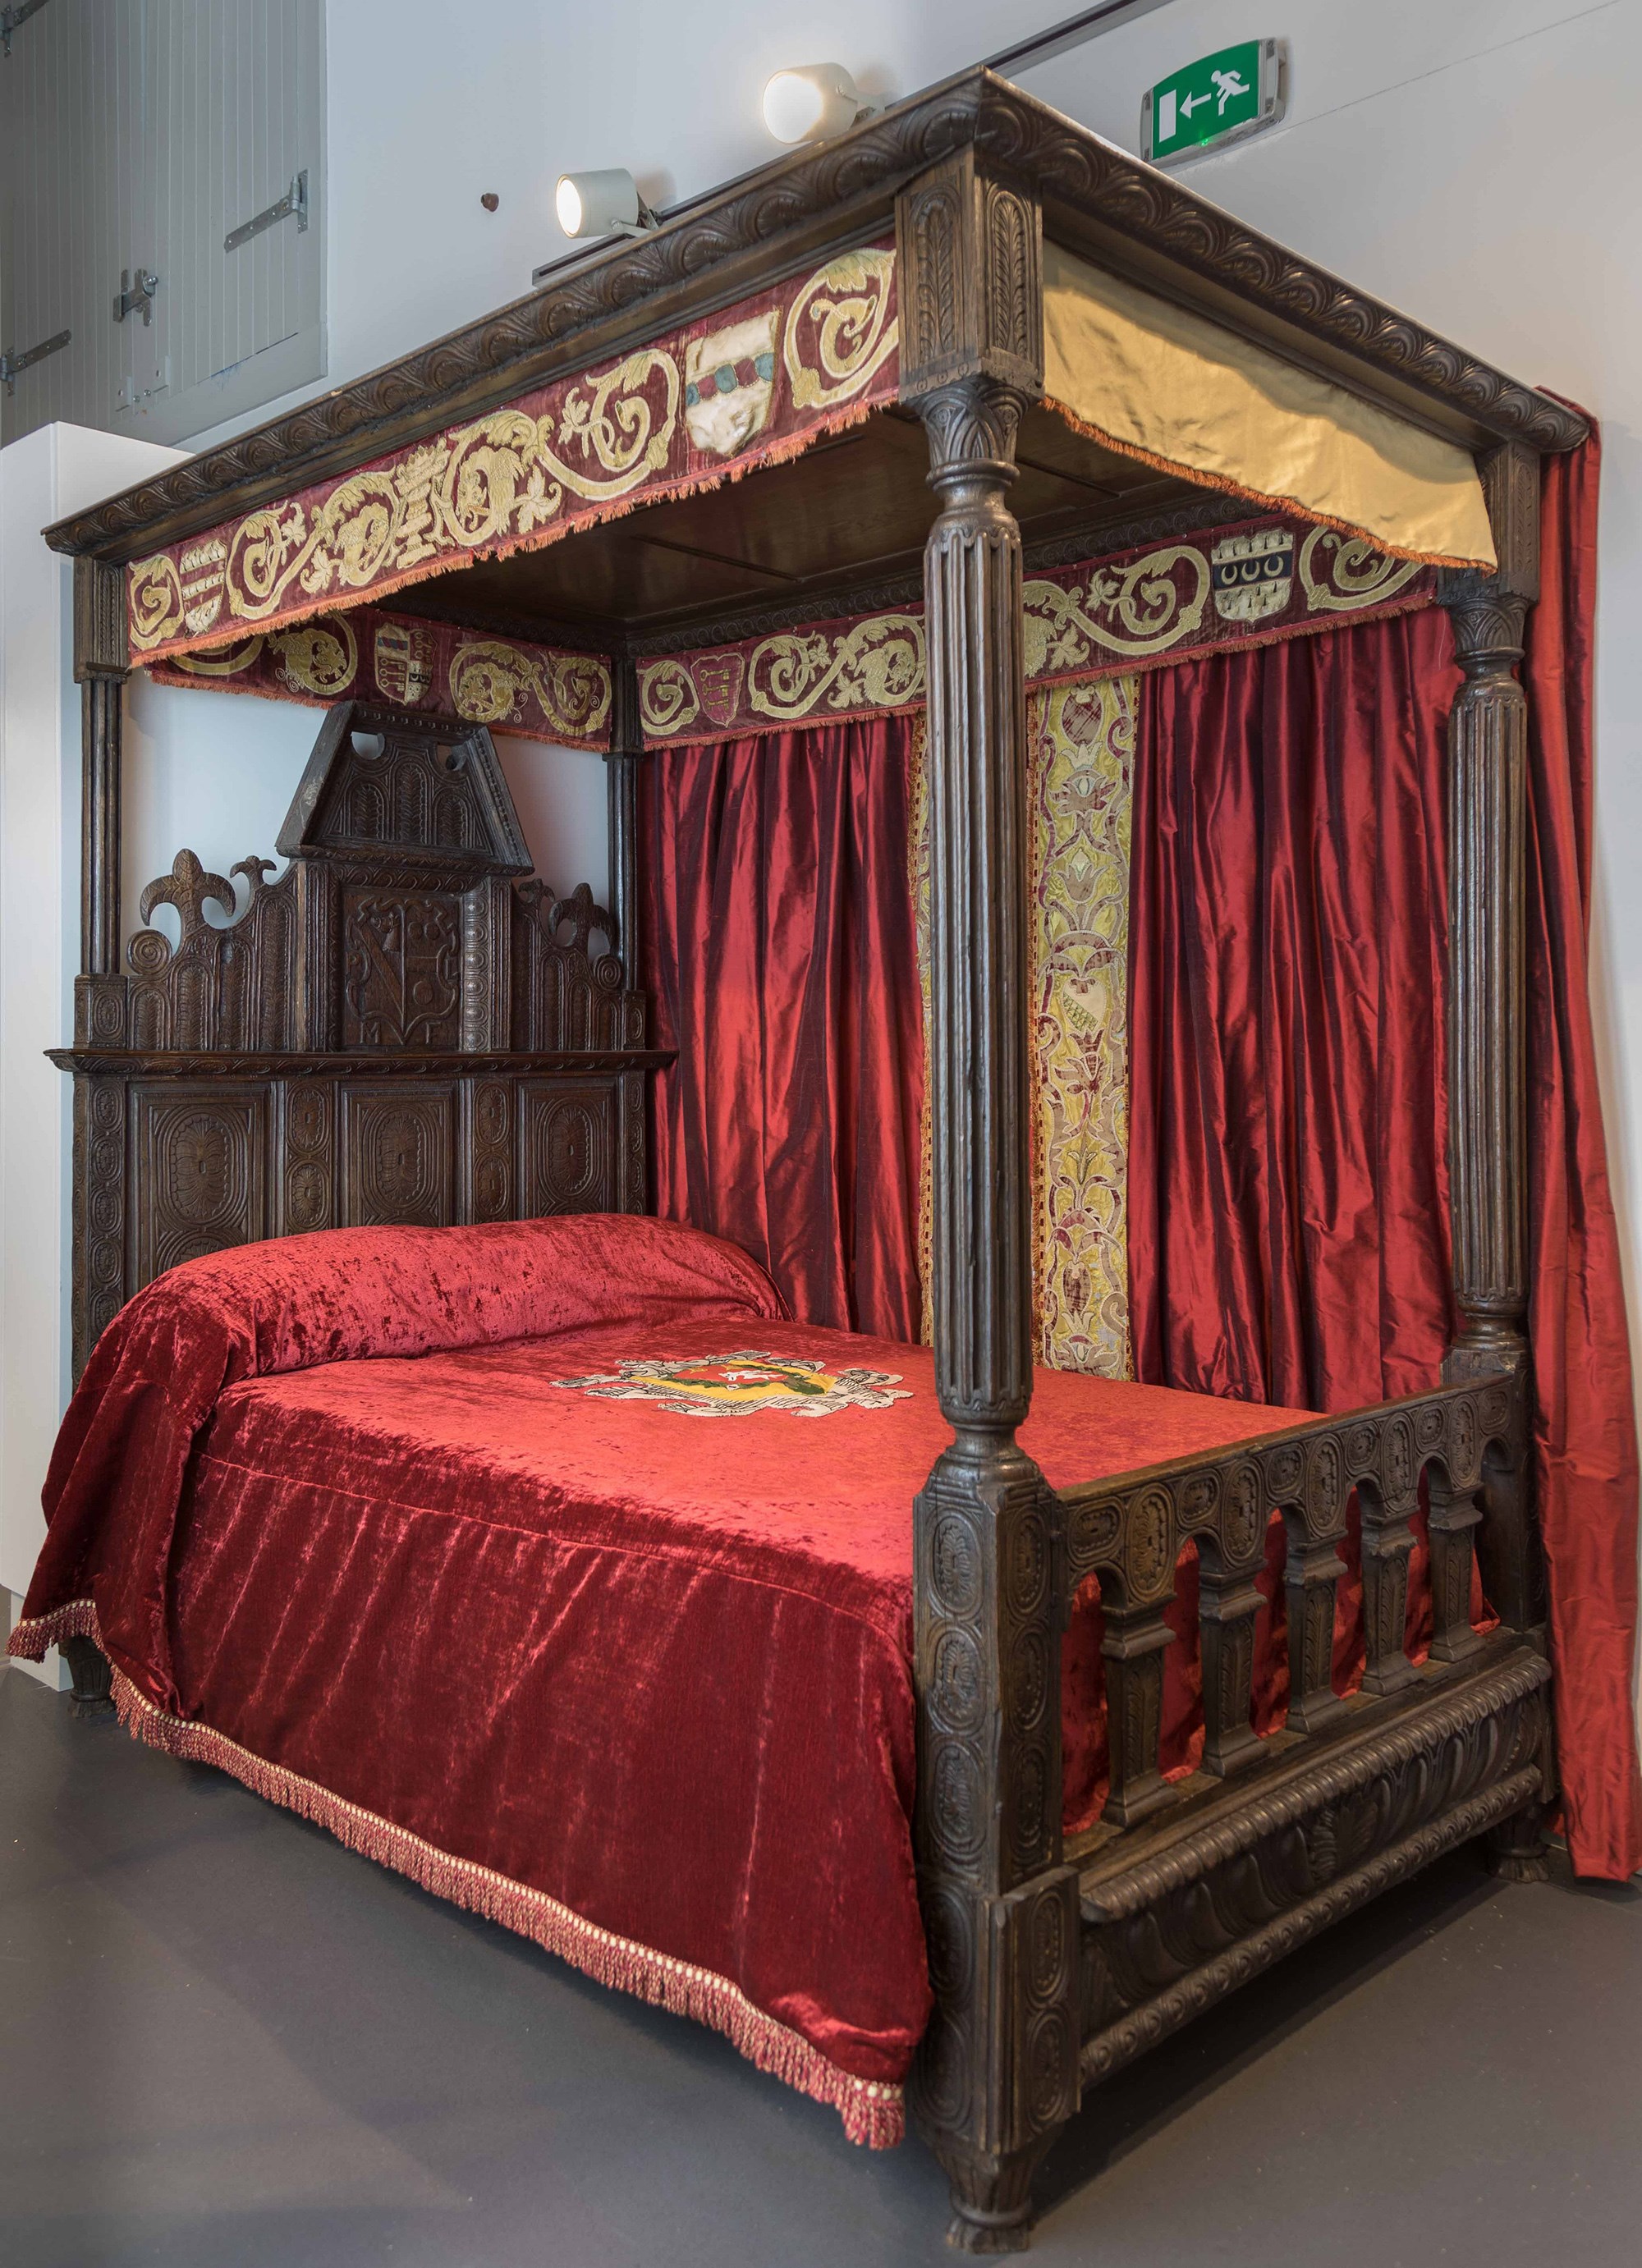 Bed, around 1600, Biggar Museum Trust.